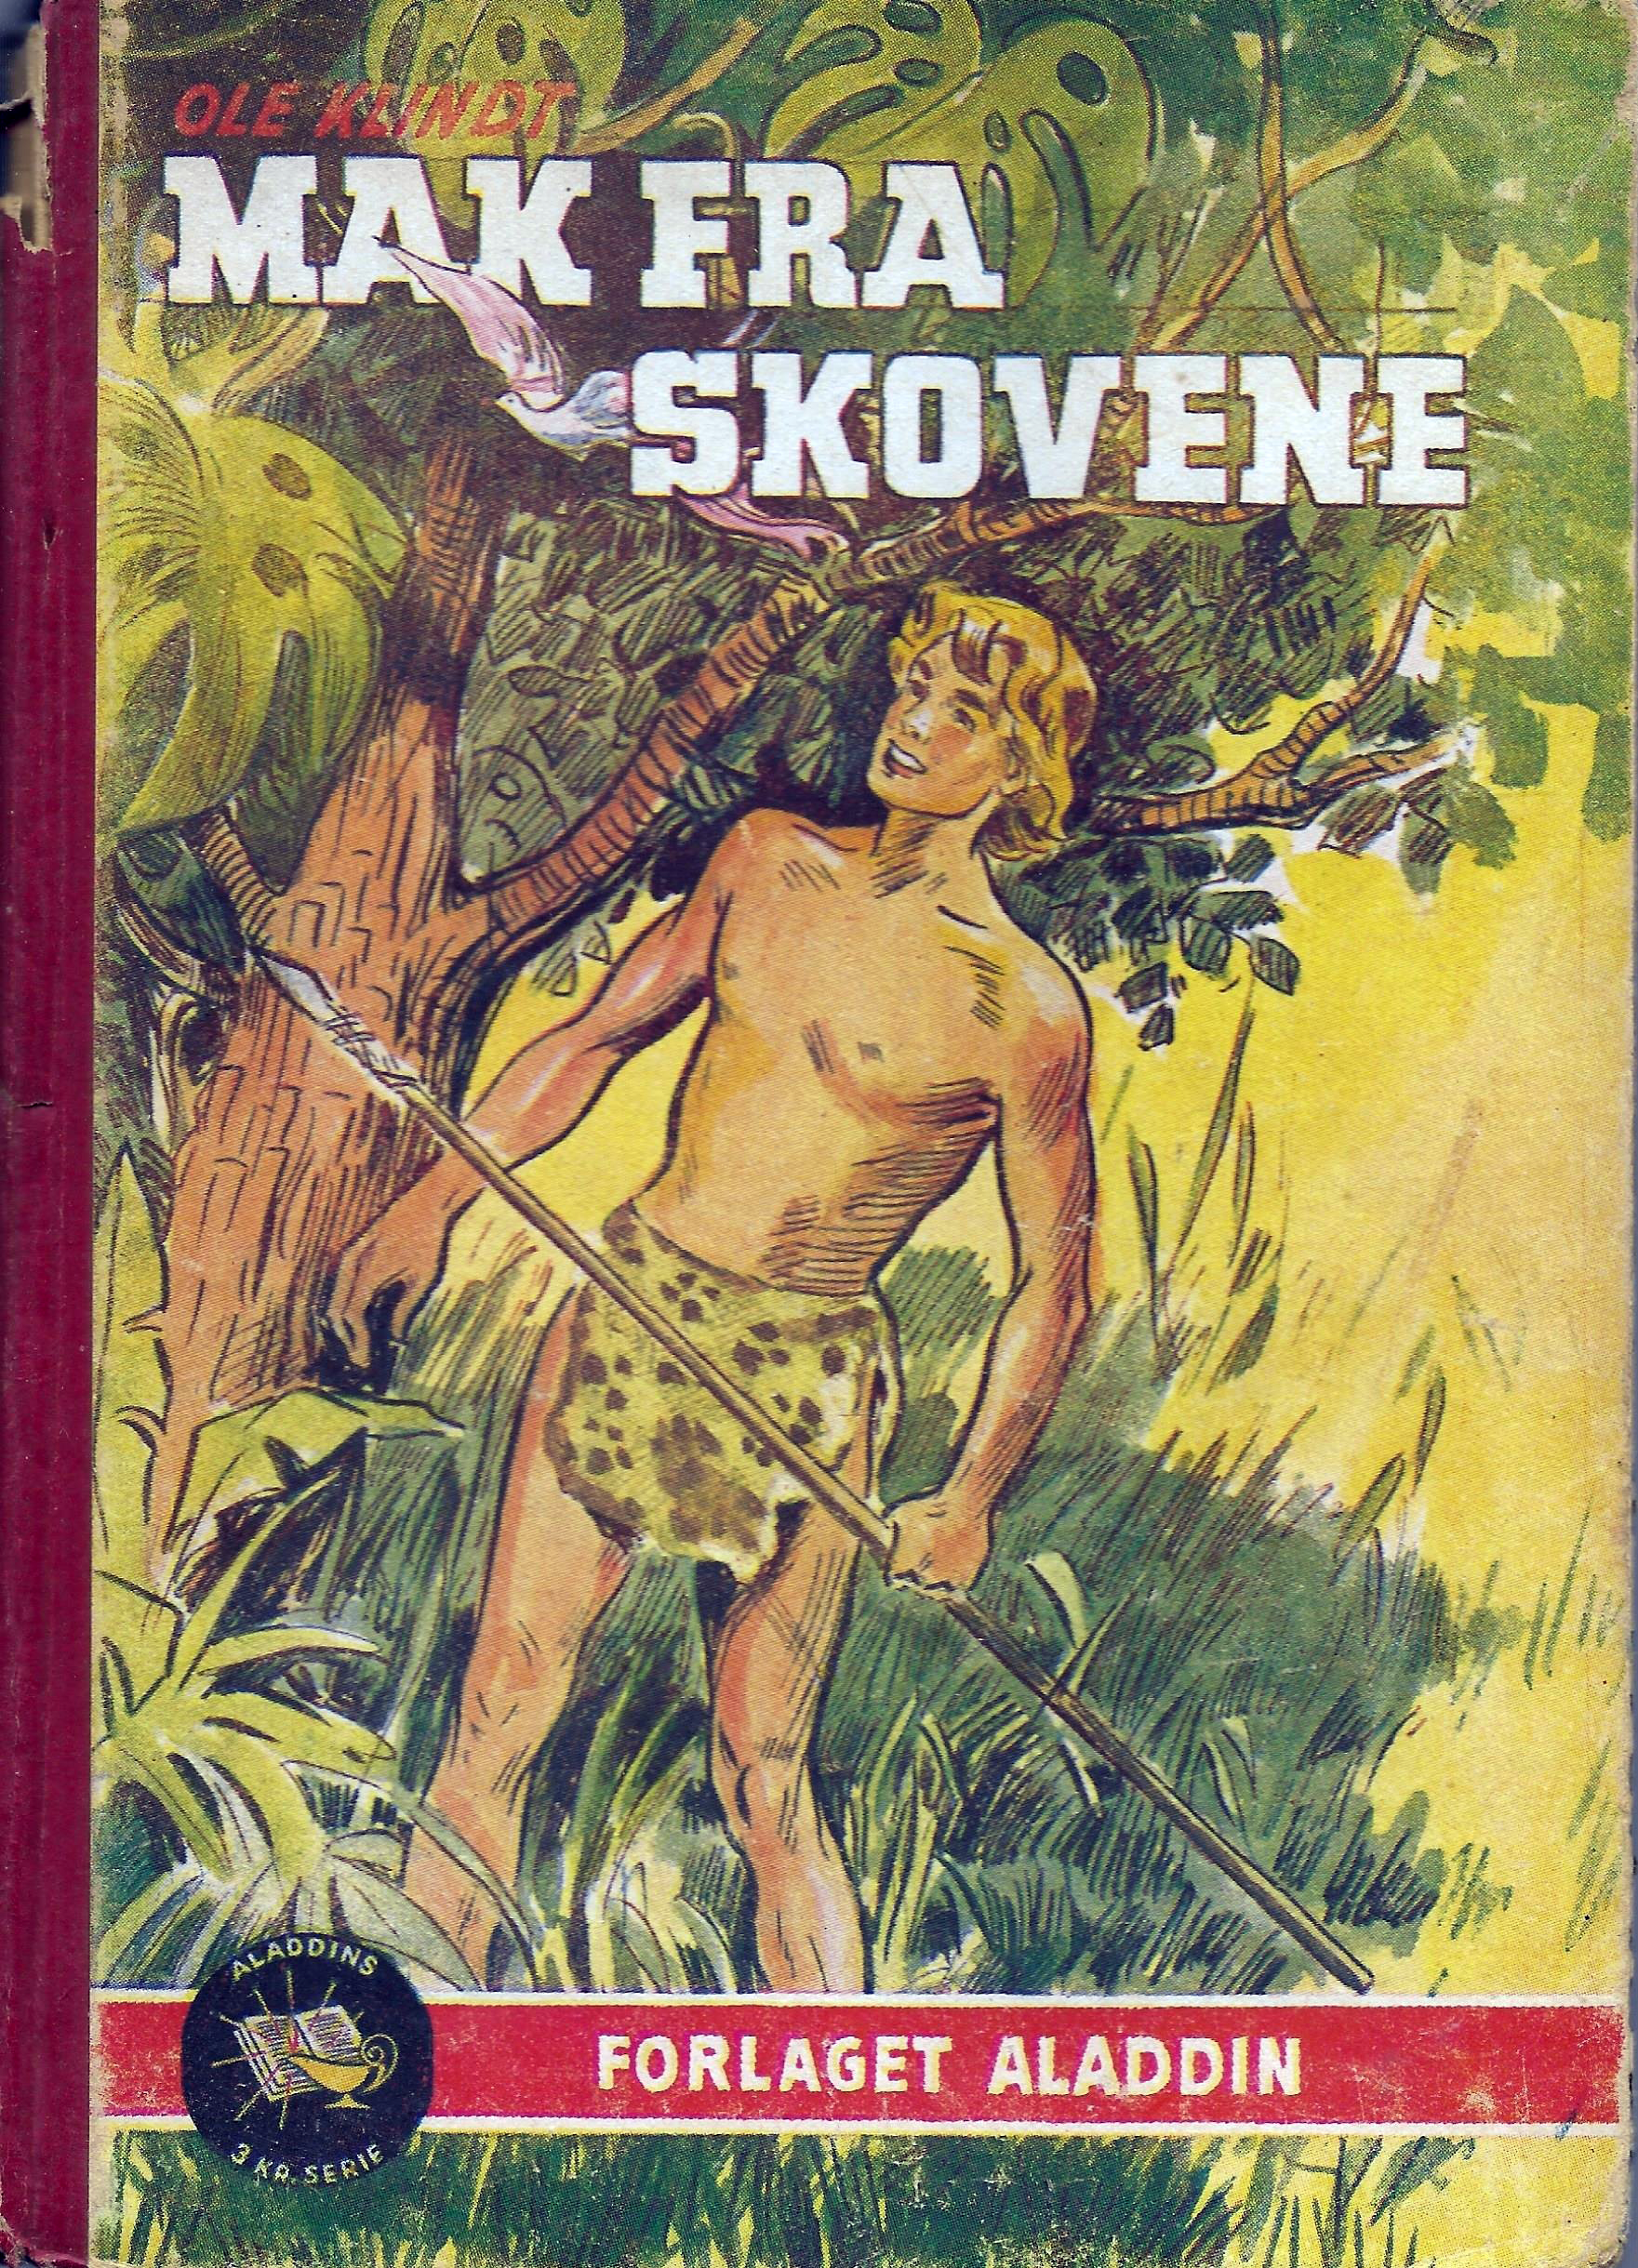 Mak fra skovene - Ole Klindt 1944